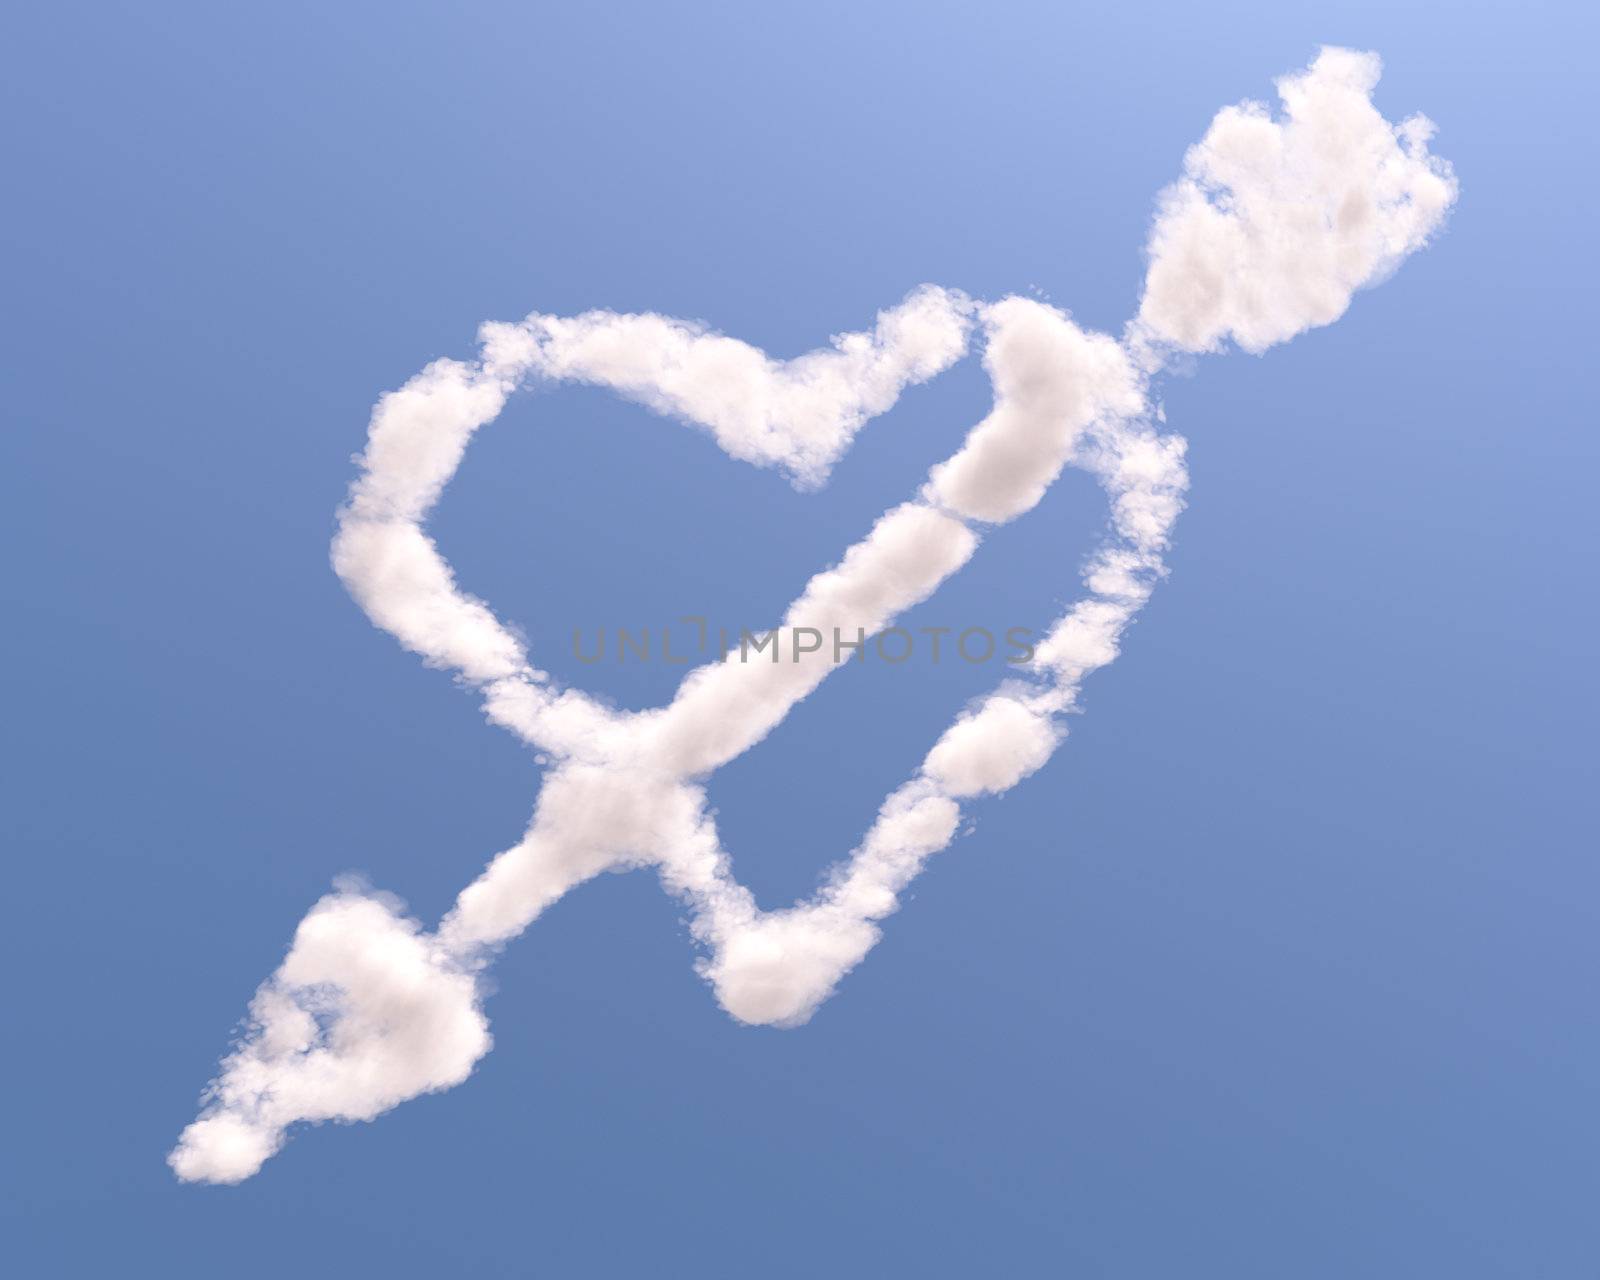 Heart shaped cloud with arrow by Zelfit